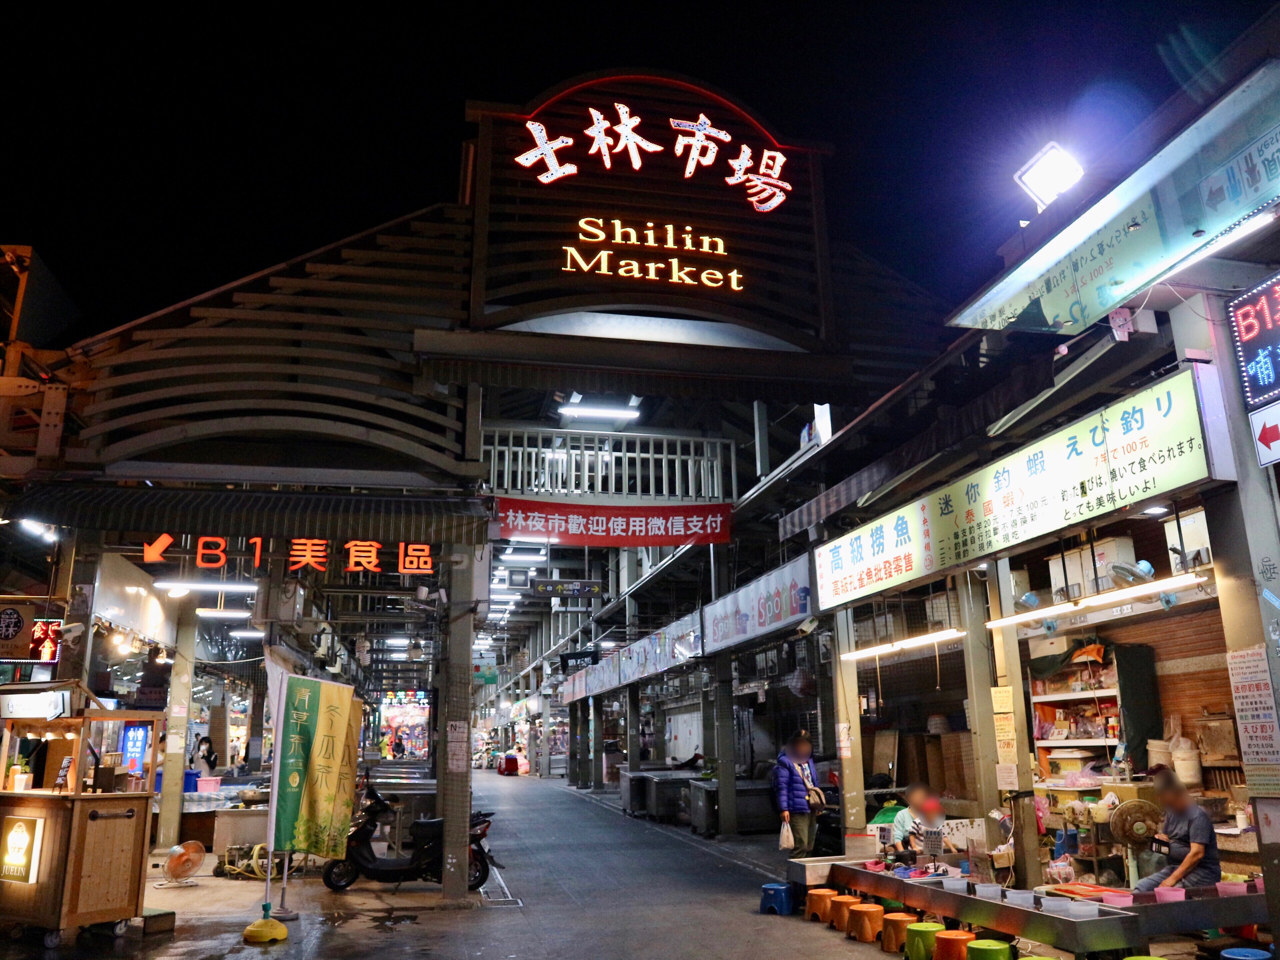 台北最大の夜市 士林夜市 で食べ歩き コロナに負けずに頑張っている店をチェック 台湾現地ルポ Tabizine 人生に旅心を